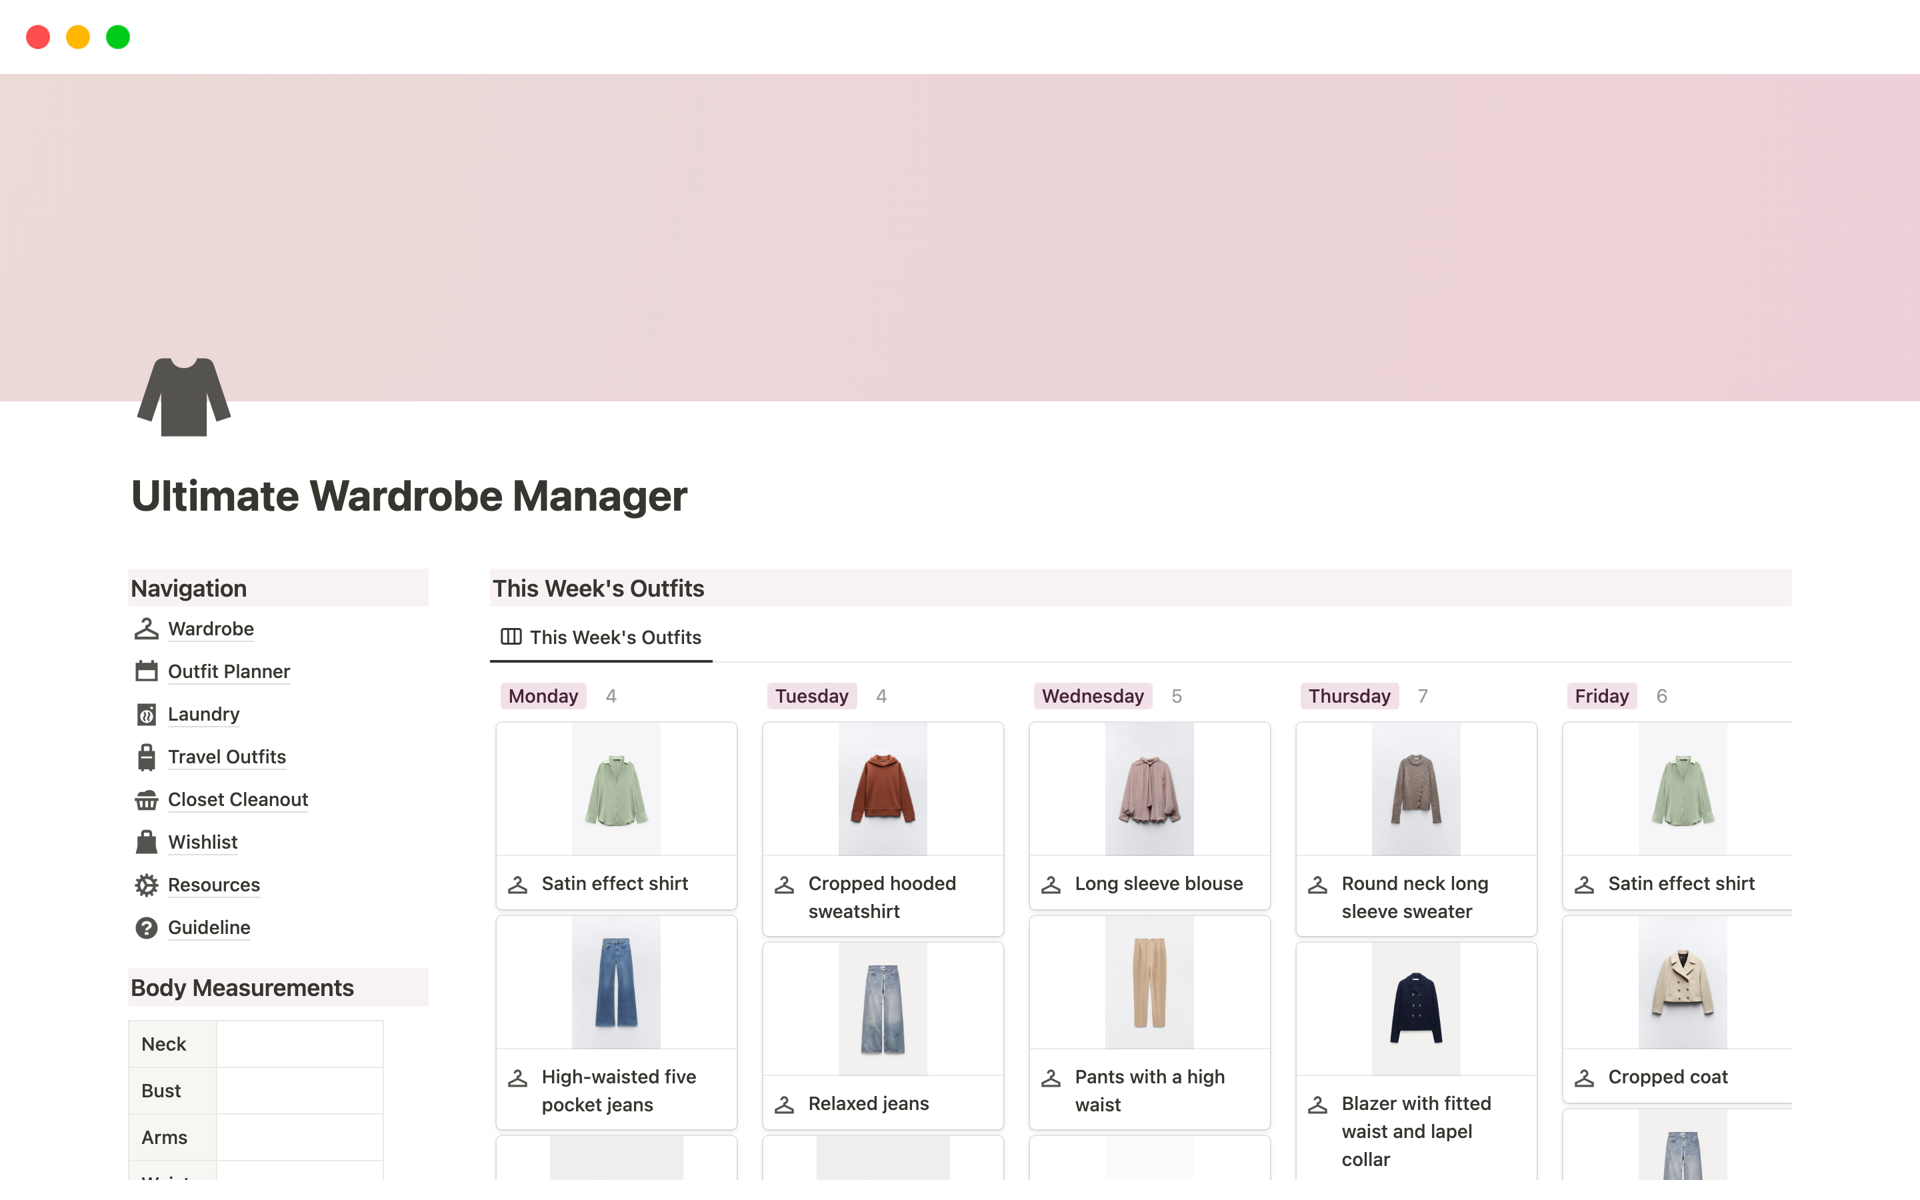 Vista previa de una plantilla para Ultimate Wardrobe Manager